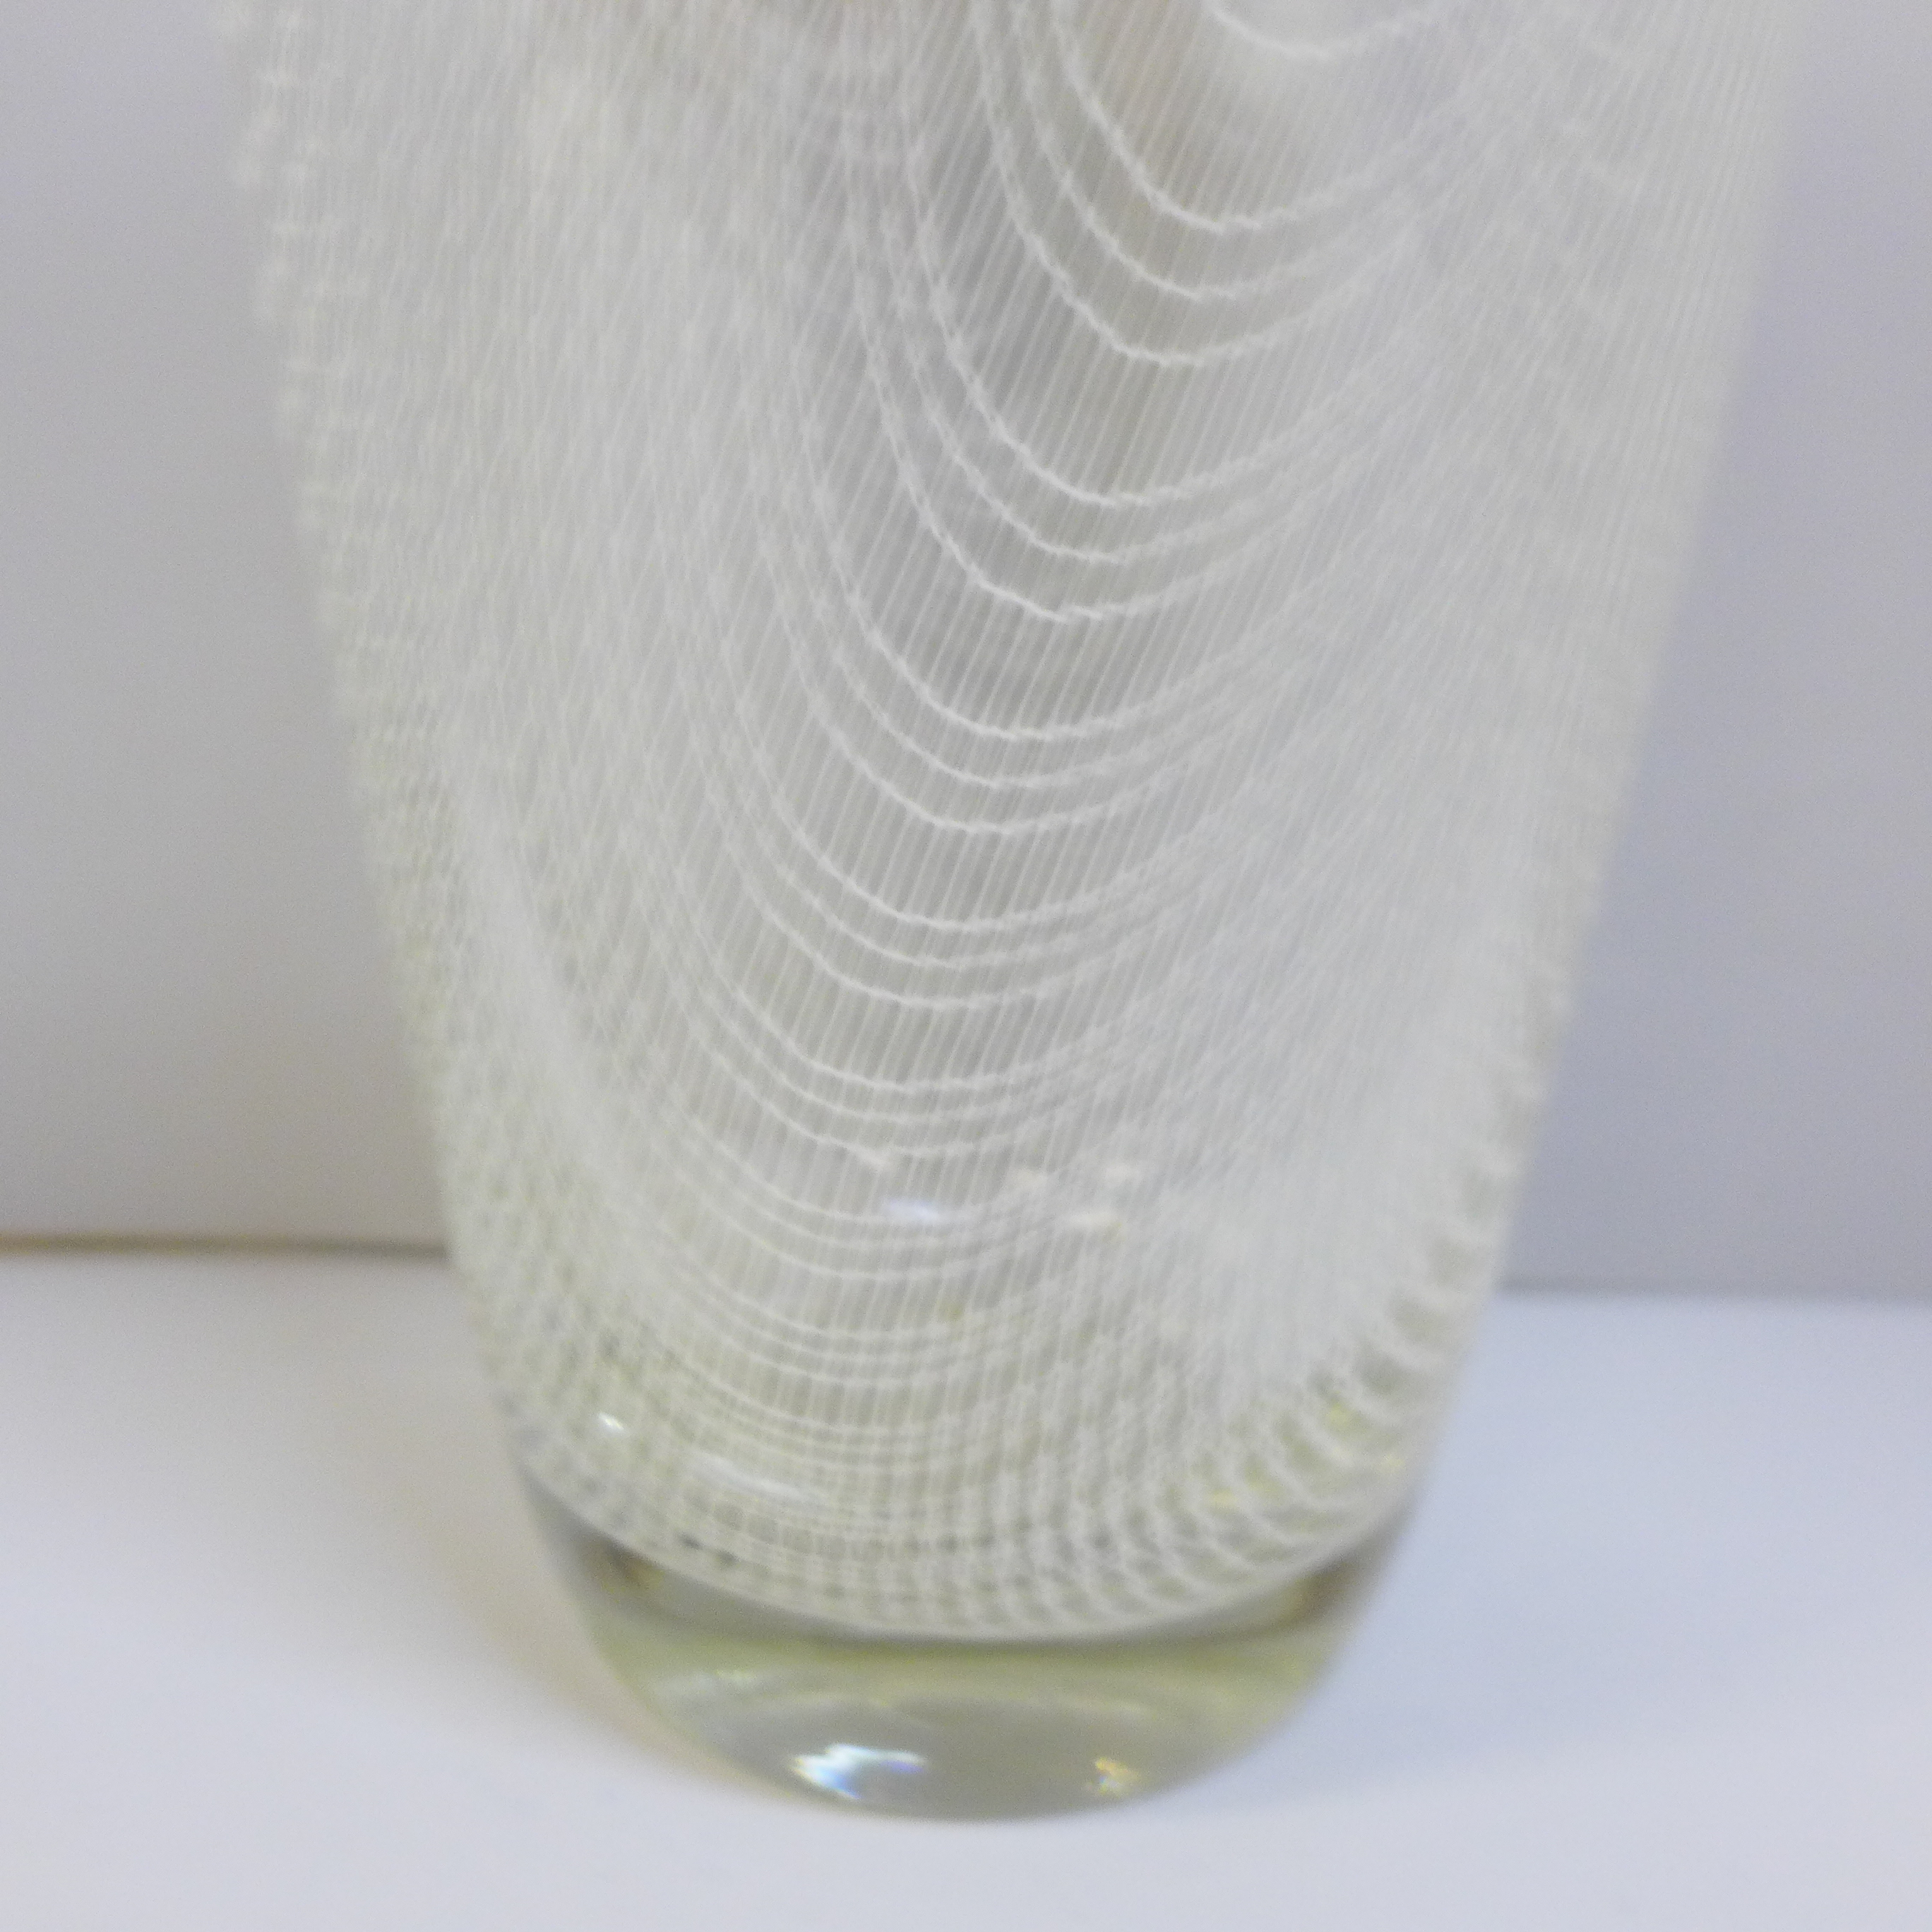 A Harrtil Metelak 1960s Czech glass vase, 19cm - Image 2 of 3